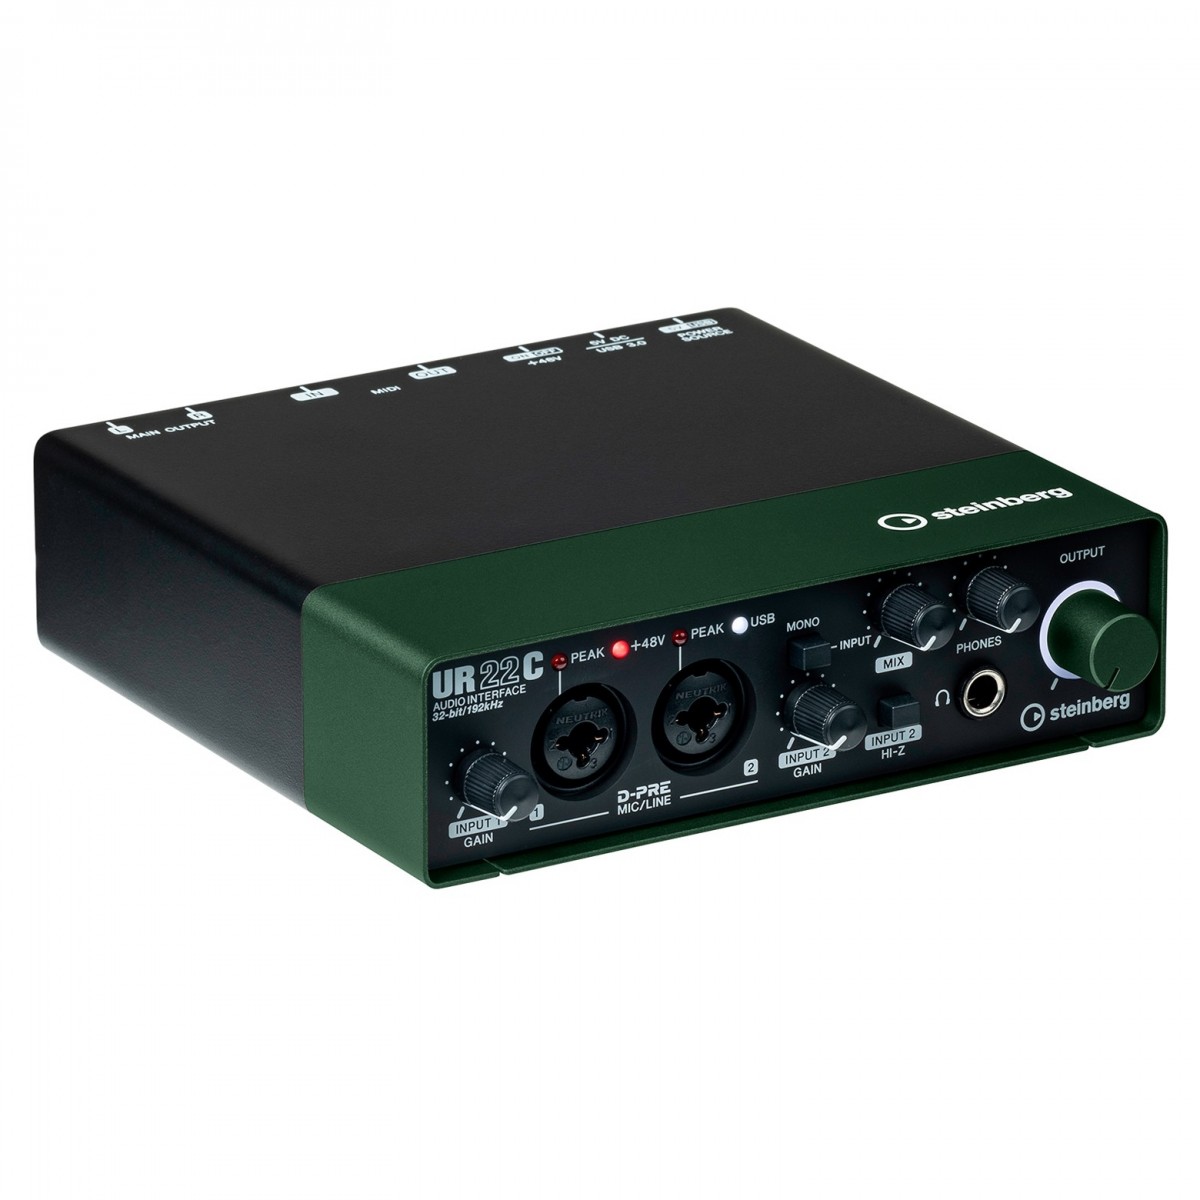 STEINBERG UR22C GREEN INTERFACCIA AUDIO USB 3.0 MIDI 2 CANALI CON D-PRE 24BIT 192Khz COLORE VERDE 2